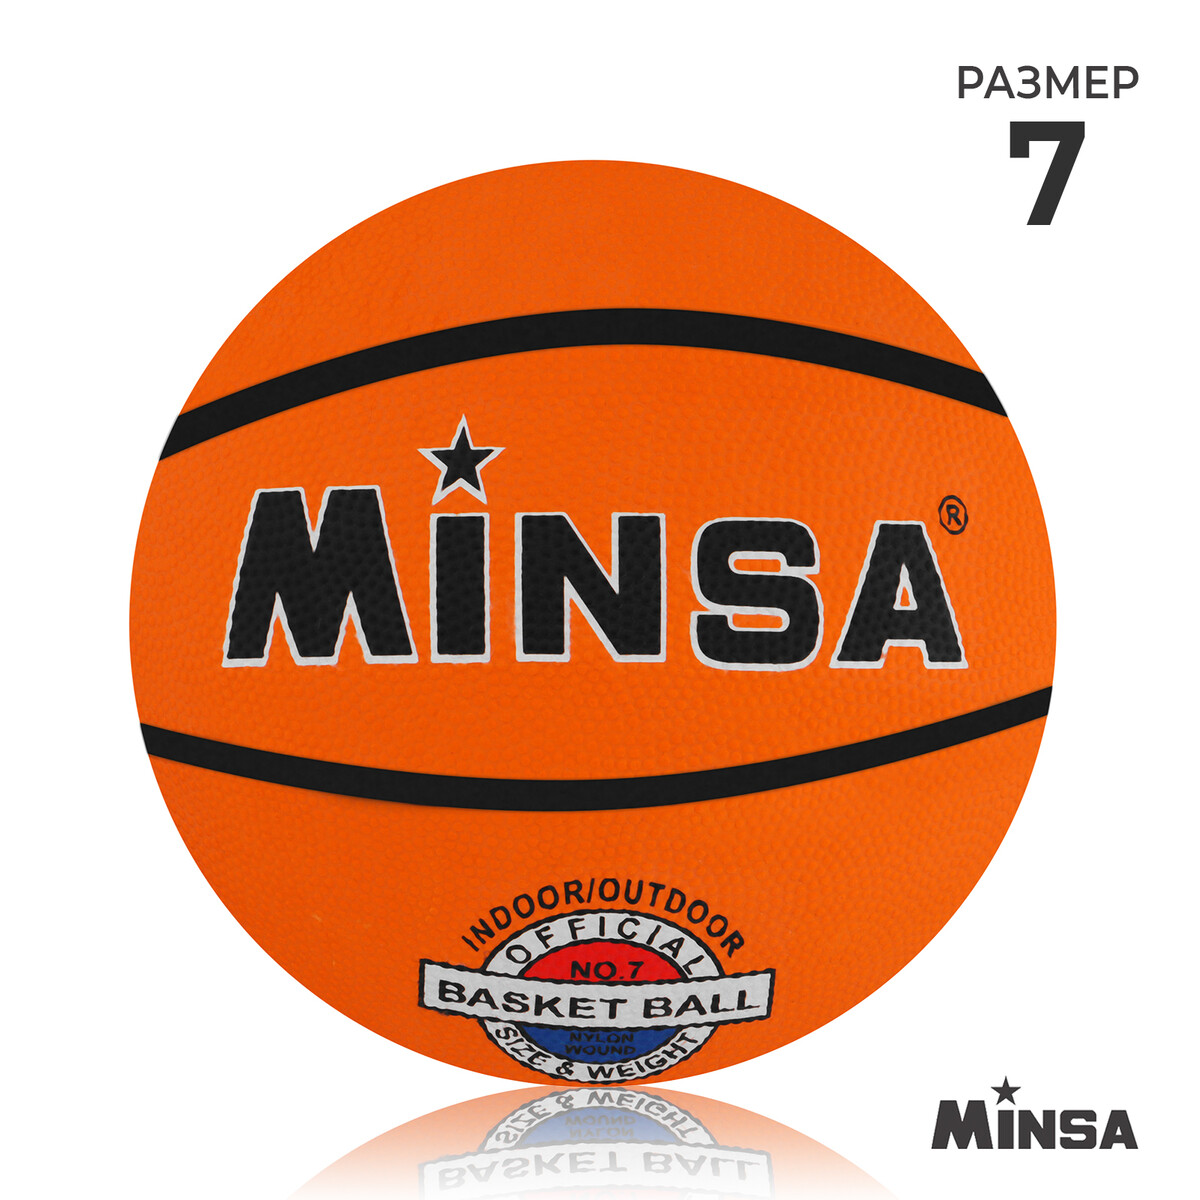 Мяч баскетбольный minsa, пвх, клееный, 8 панелей, р. 7 мяч баскетбольный minsa street пвх клееный 8 панелей р 7